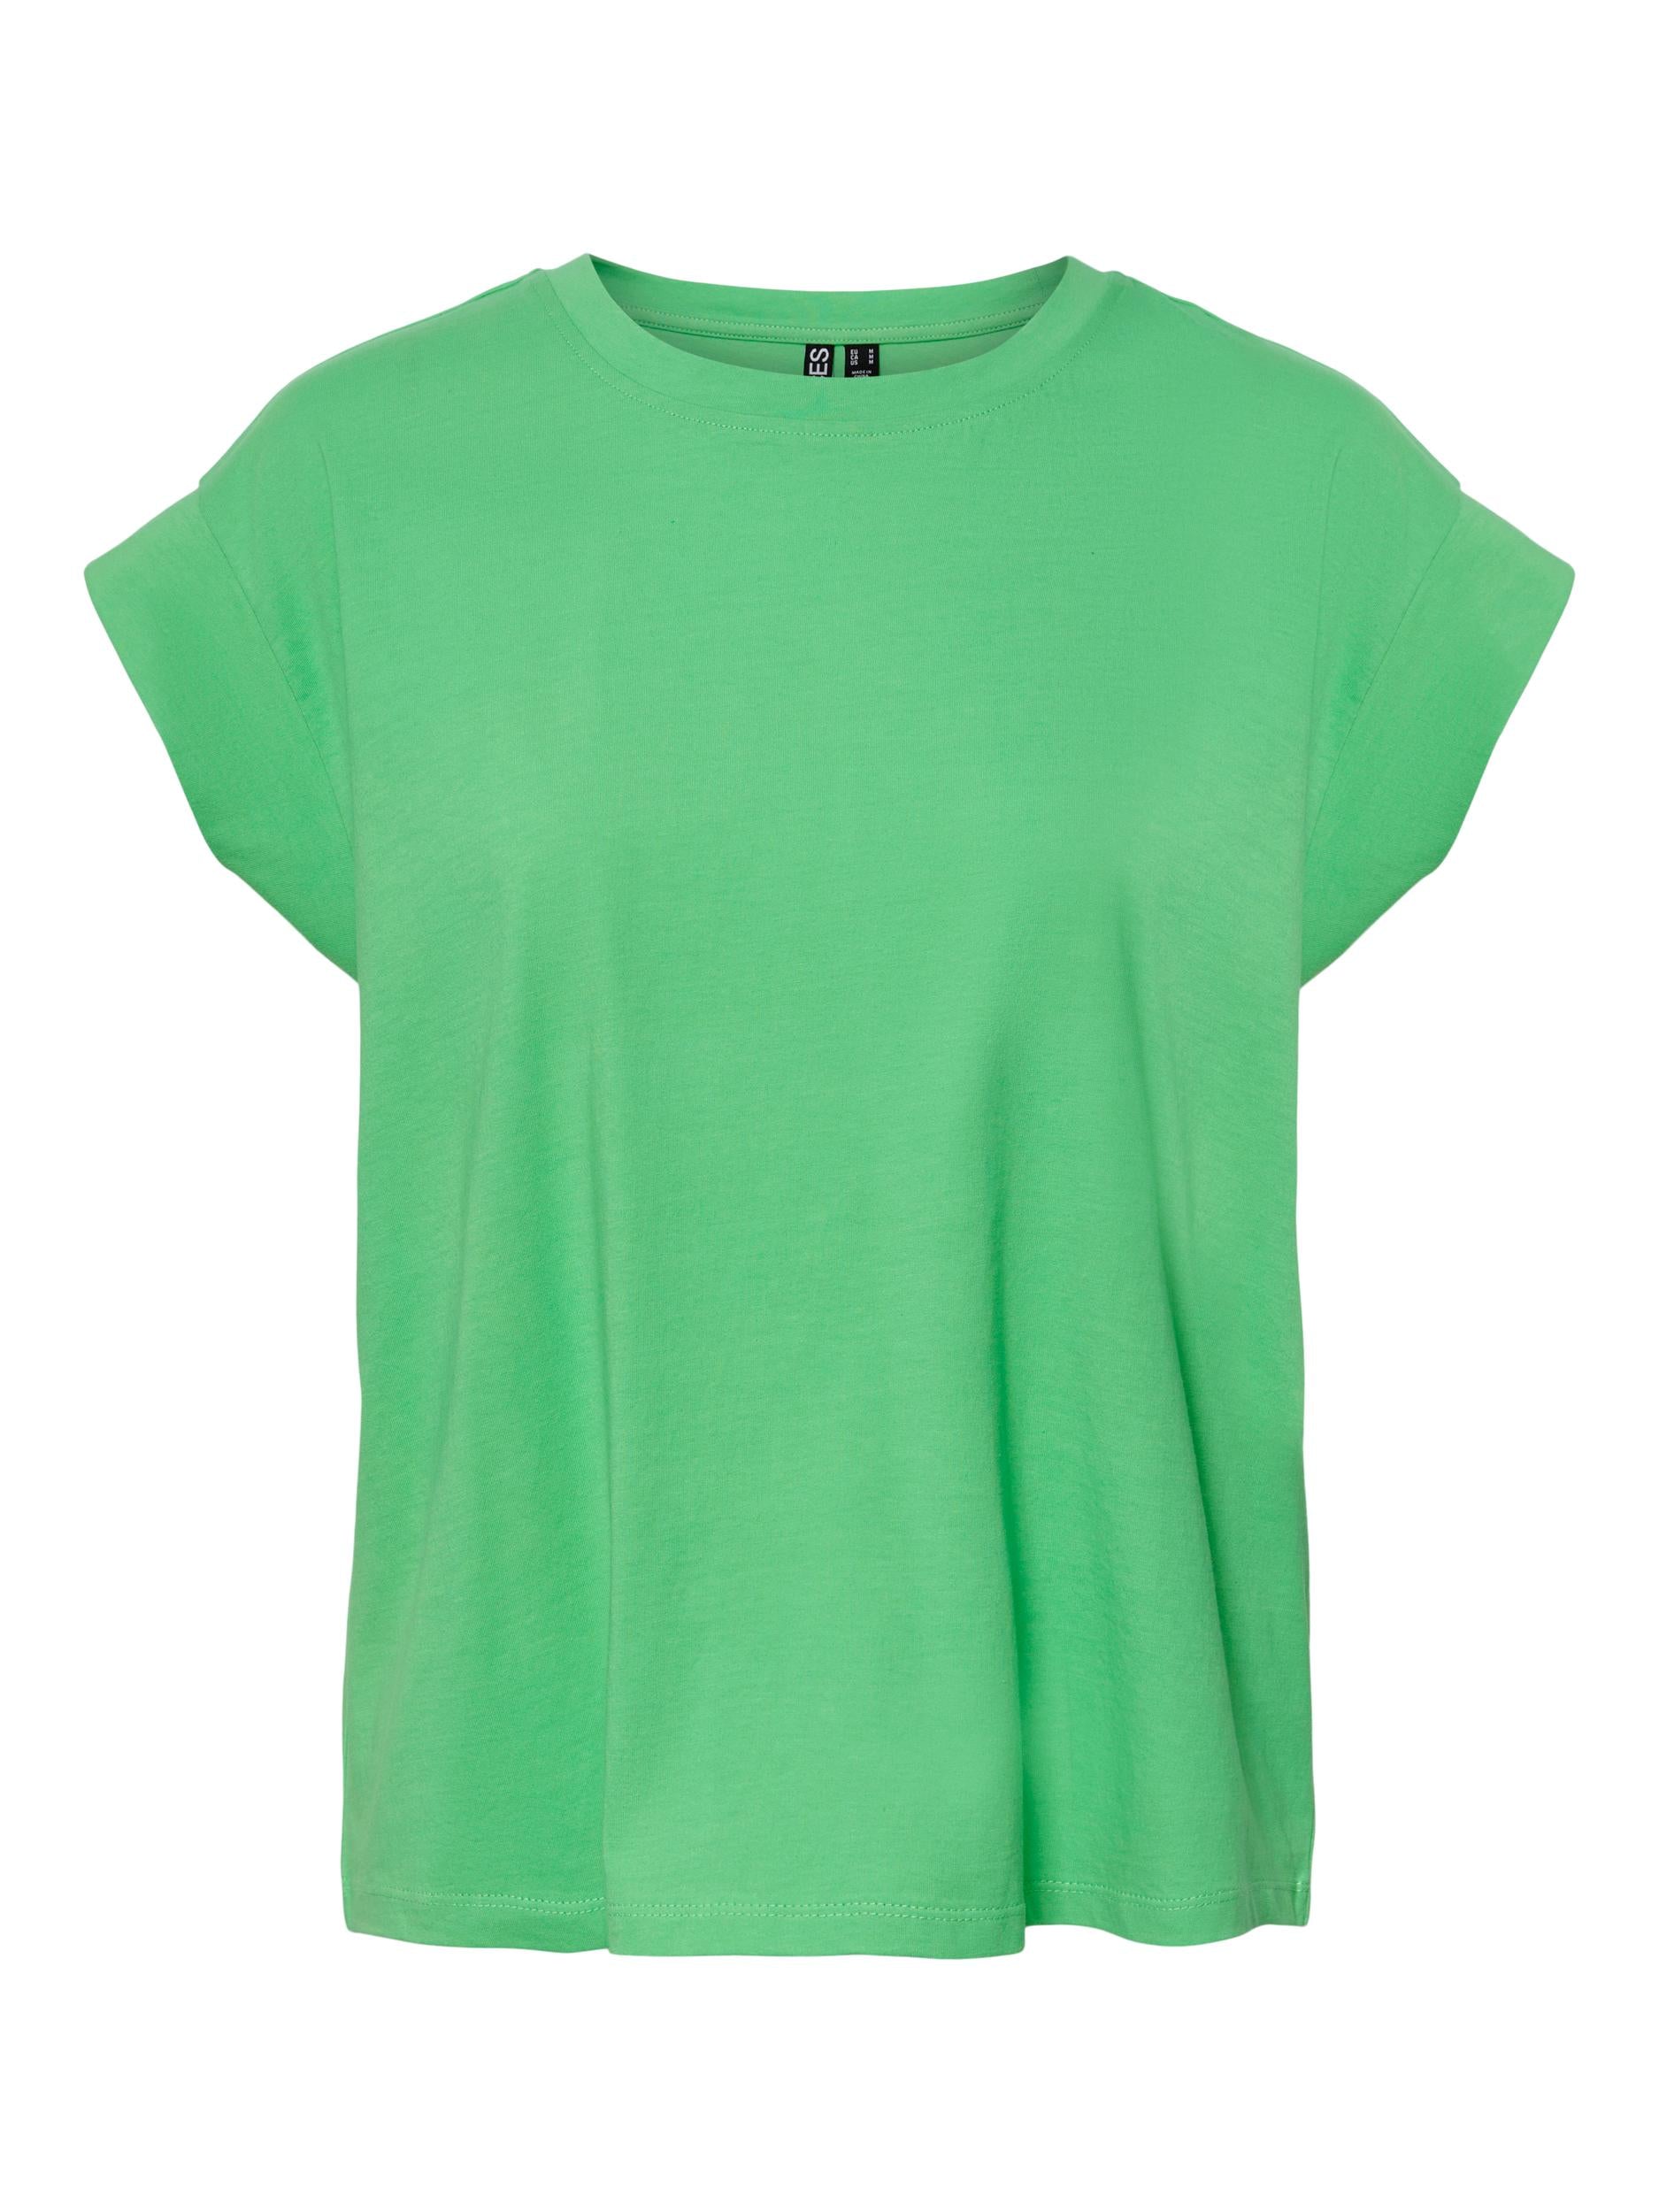 Pieces t shirt verde